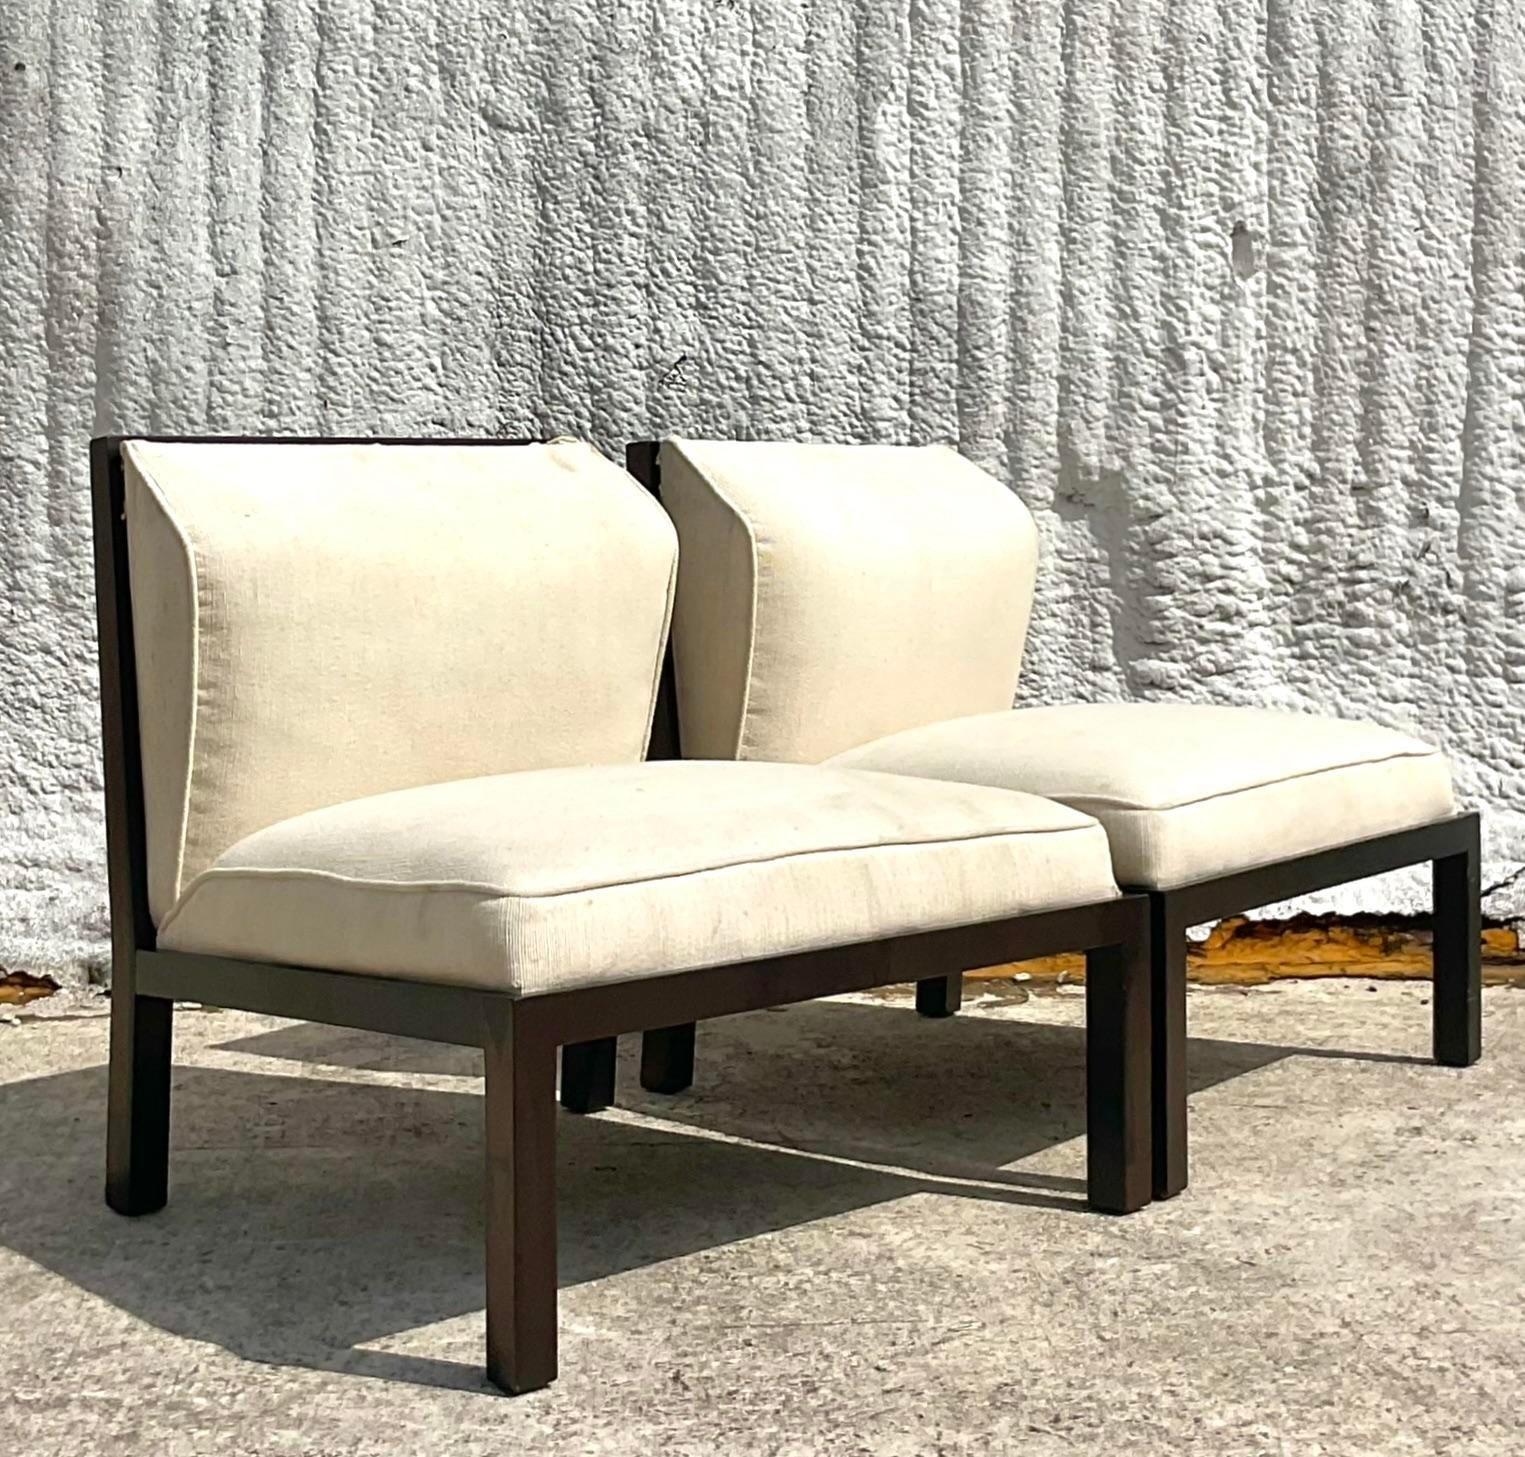 Ein fantastisches Paar von Vintage Boho Slipper Stühle. entworfen von der kultigen Michael Taylor für Baker und auf der Unterseite markiert. Das begehrte Shoji-Schirm-Design. Erworben aus einem Hudson-Nachlass